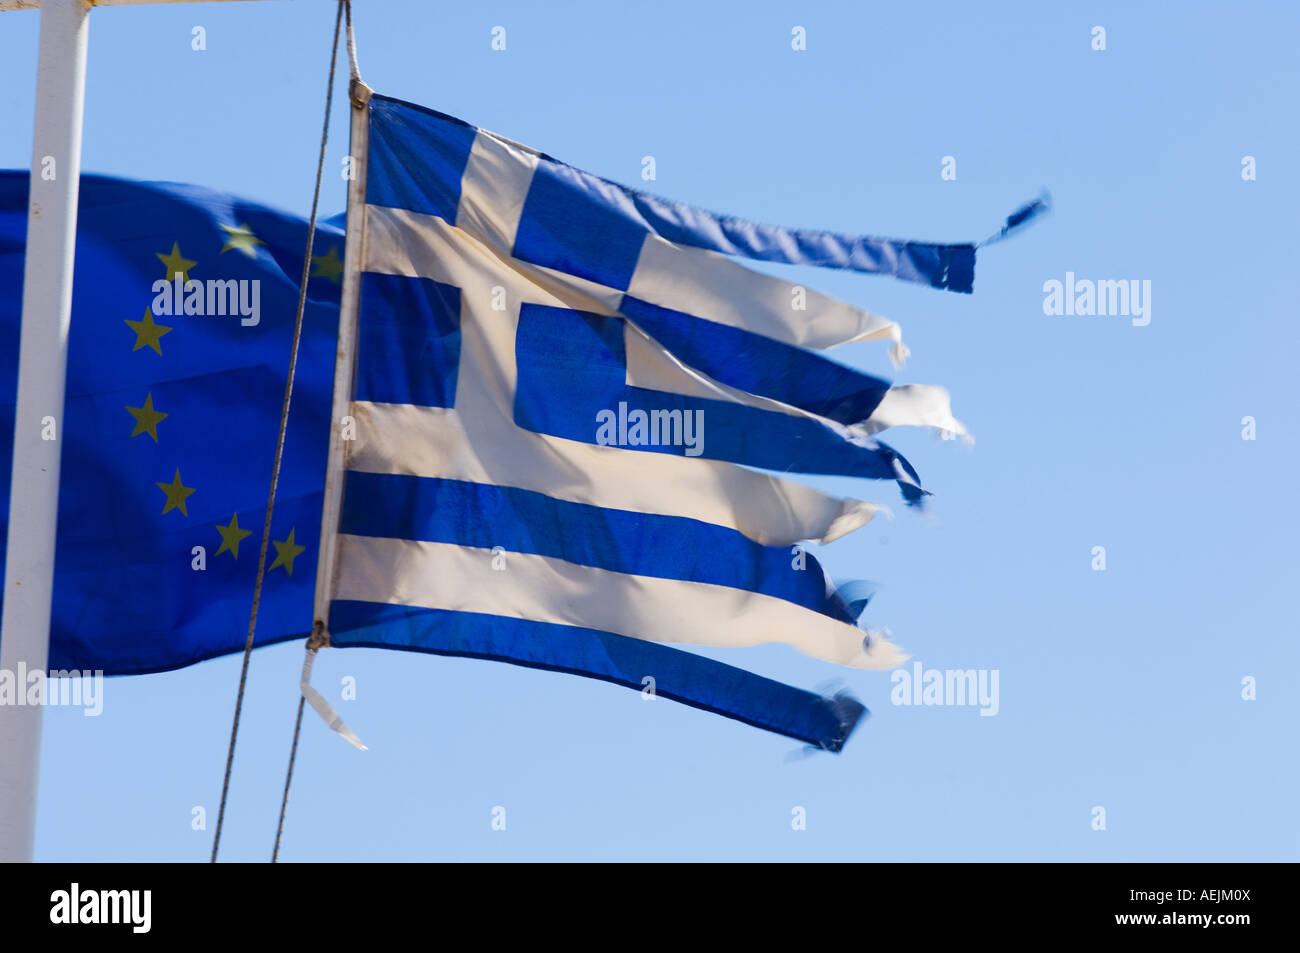 Drapeau grec et européen Flagg, le vent, la Grèce Banque D'Images